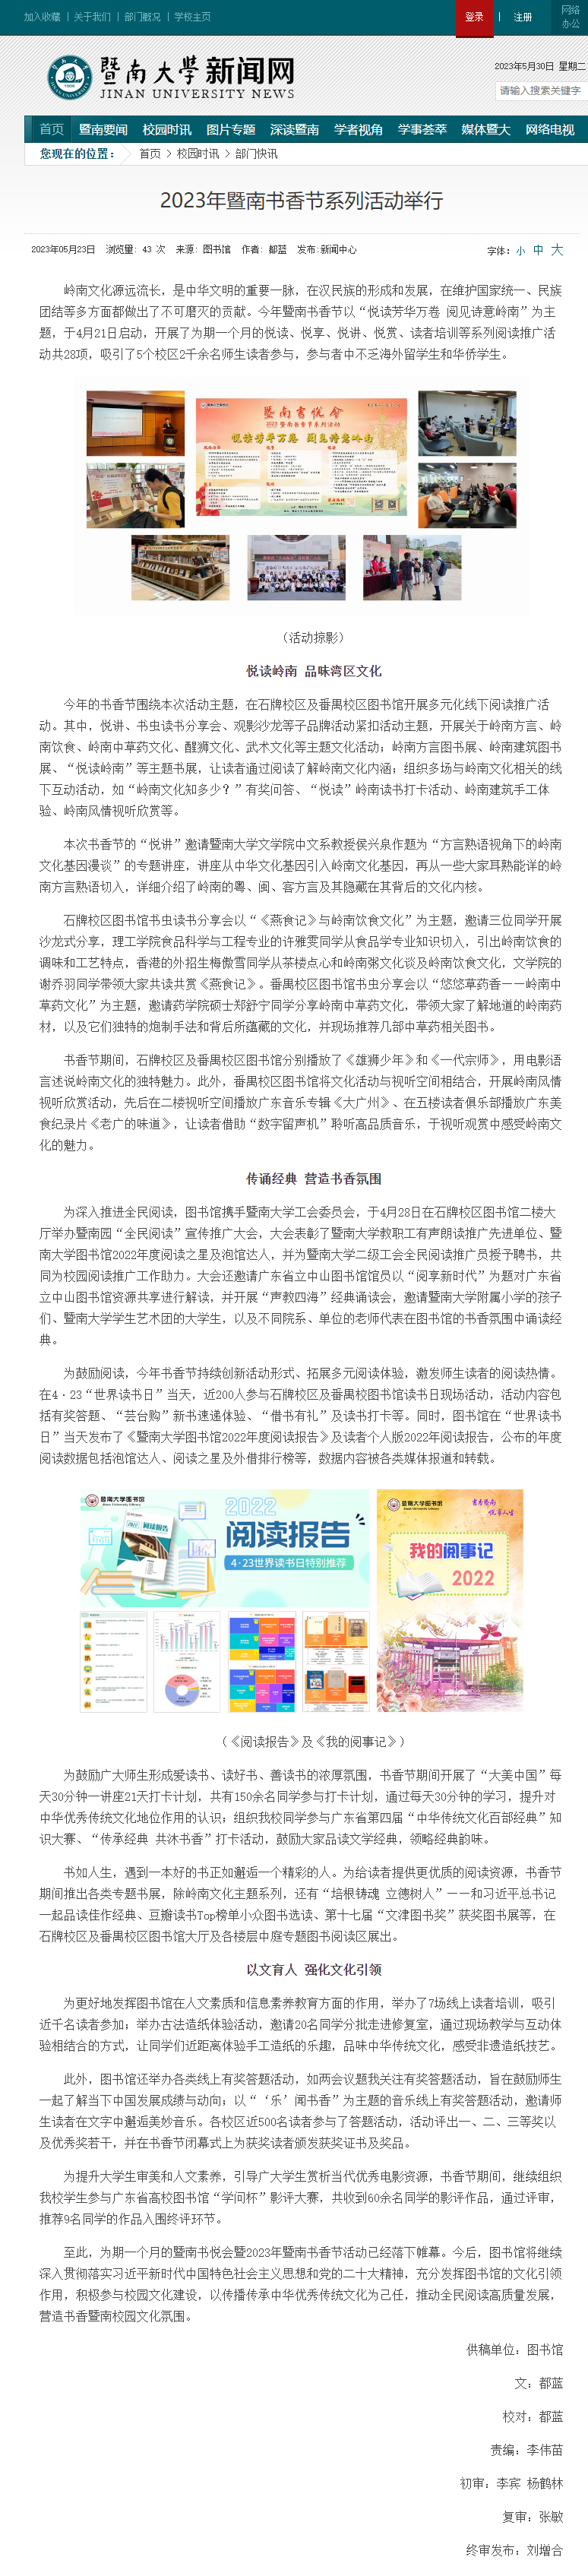 2023年暨南书香节系列活动举行 - 暨南大学新闻网.png